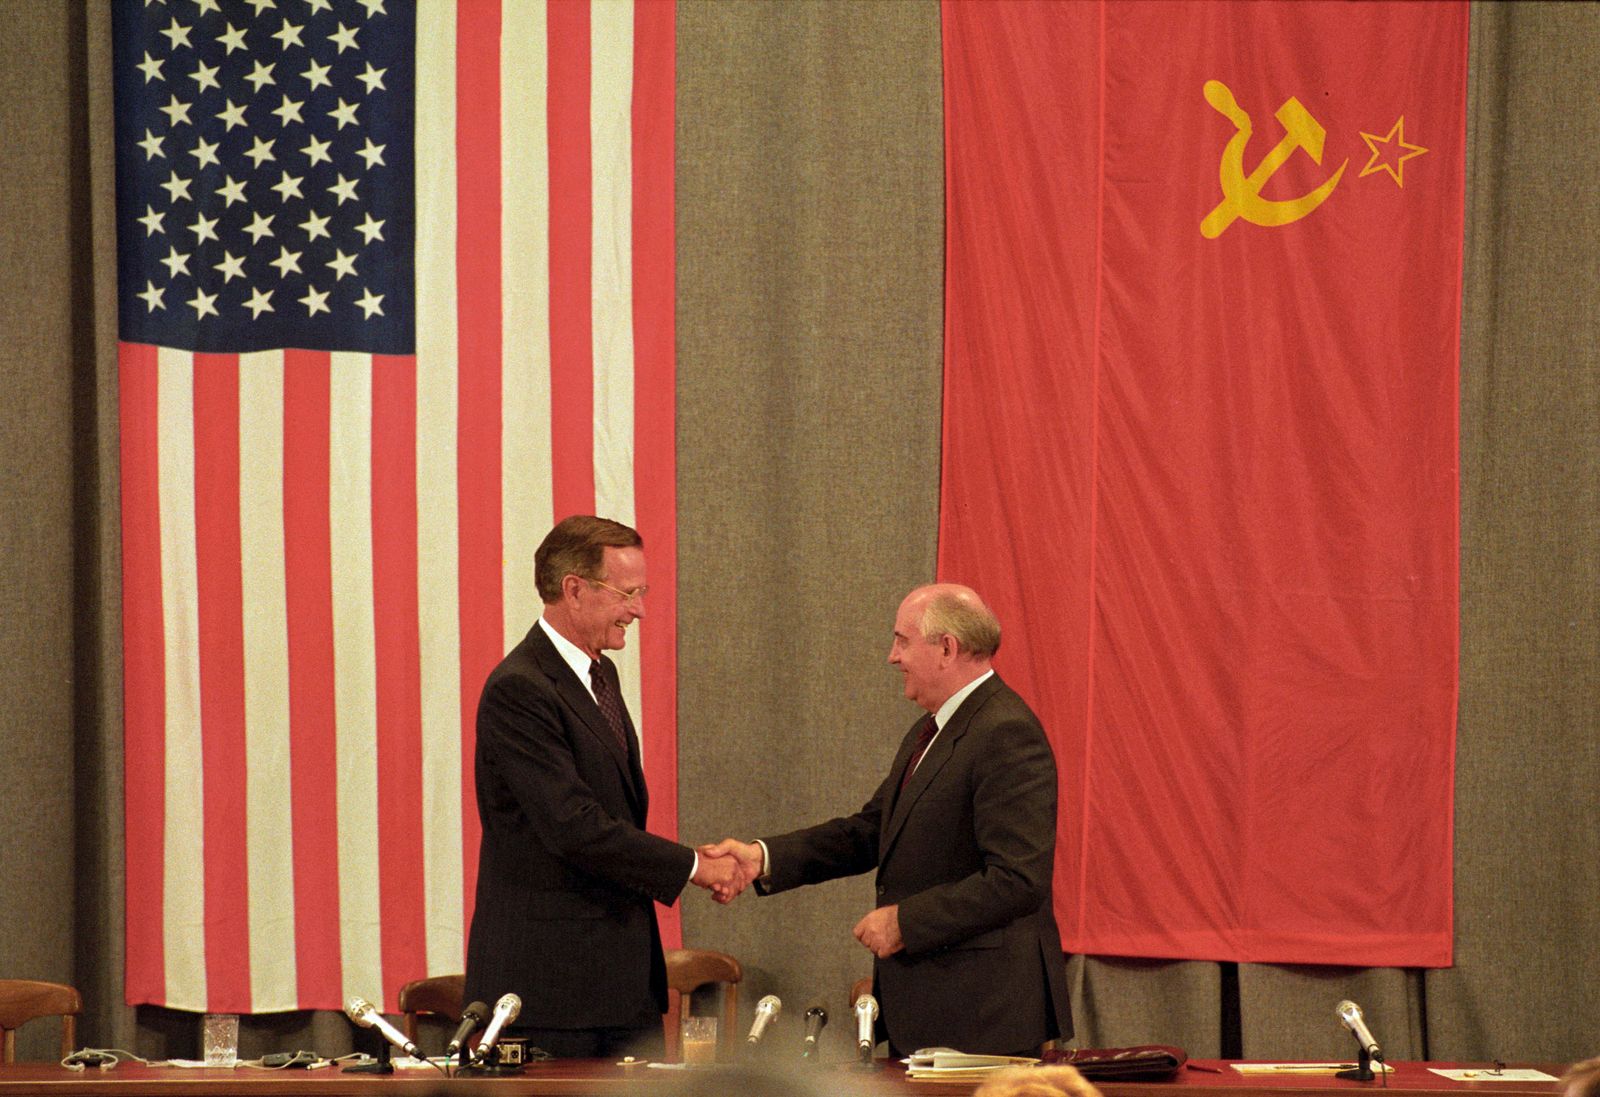 الرئيس الأميركي الراحل جورج بوش الأب يصافح الرئيس السوفييتي الرحل ميخائيل جورباتشوف في ختام مؤتمر صحافي في موسكو. 31 يوليو 1991 - REUTERS